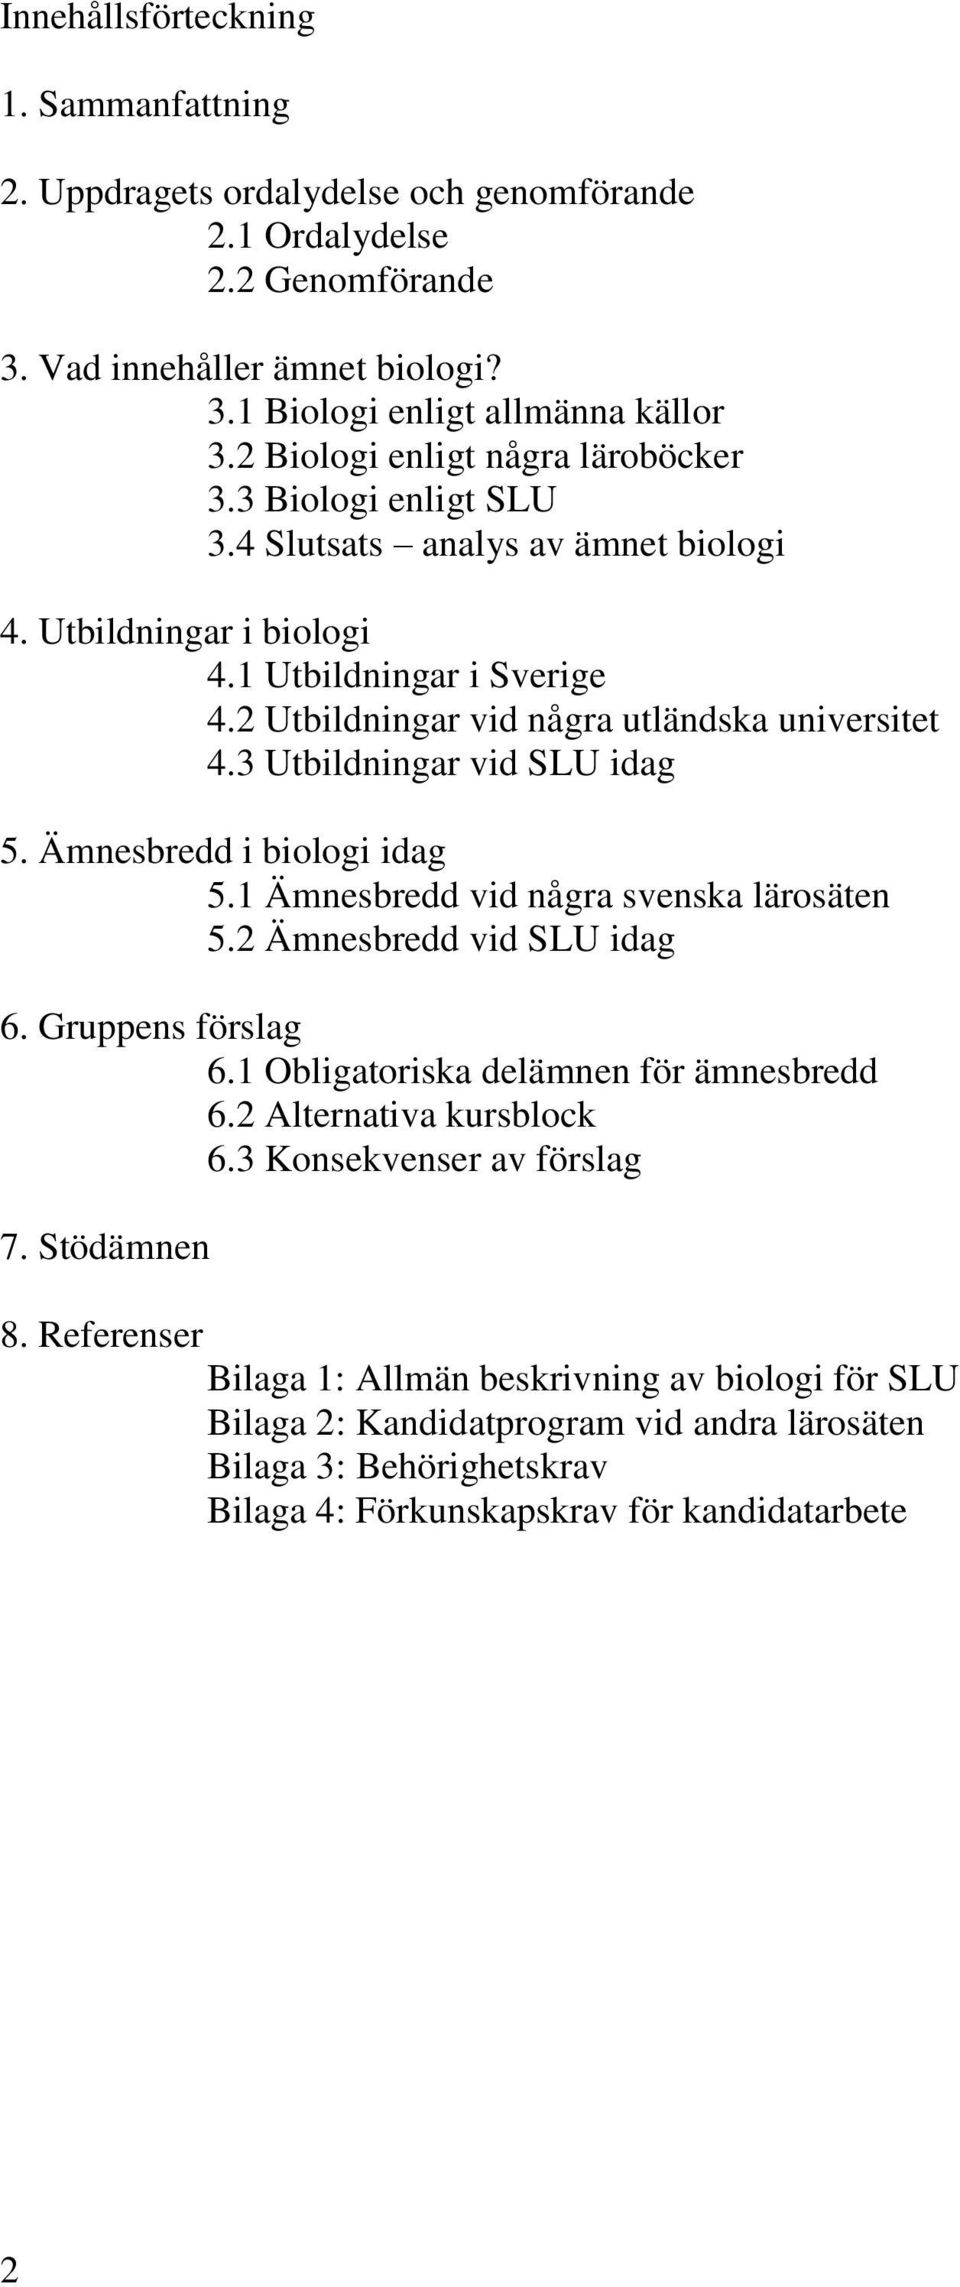 3 Utbildningar vid SLU idag 5. Ämnesbredd i biologi idag 5.1 Ämnesbredd vid några svenska lärosäten 5.2 Ämnesbredd vid SLU idag 6. Gruppens förslag 6.1 Obligatoriska delämnen för ämnesbredd 6.